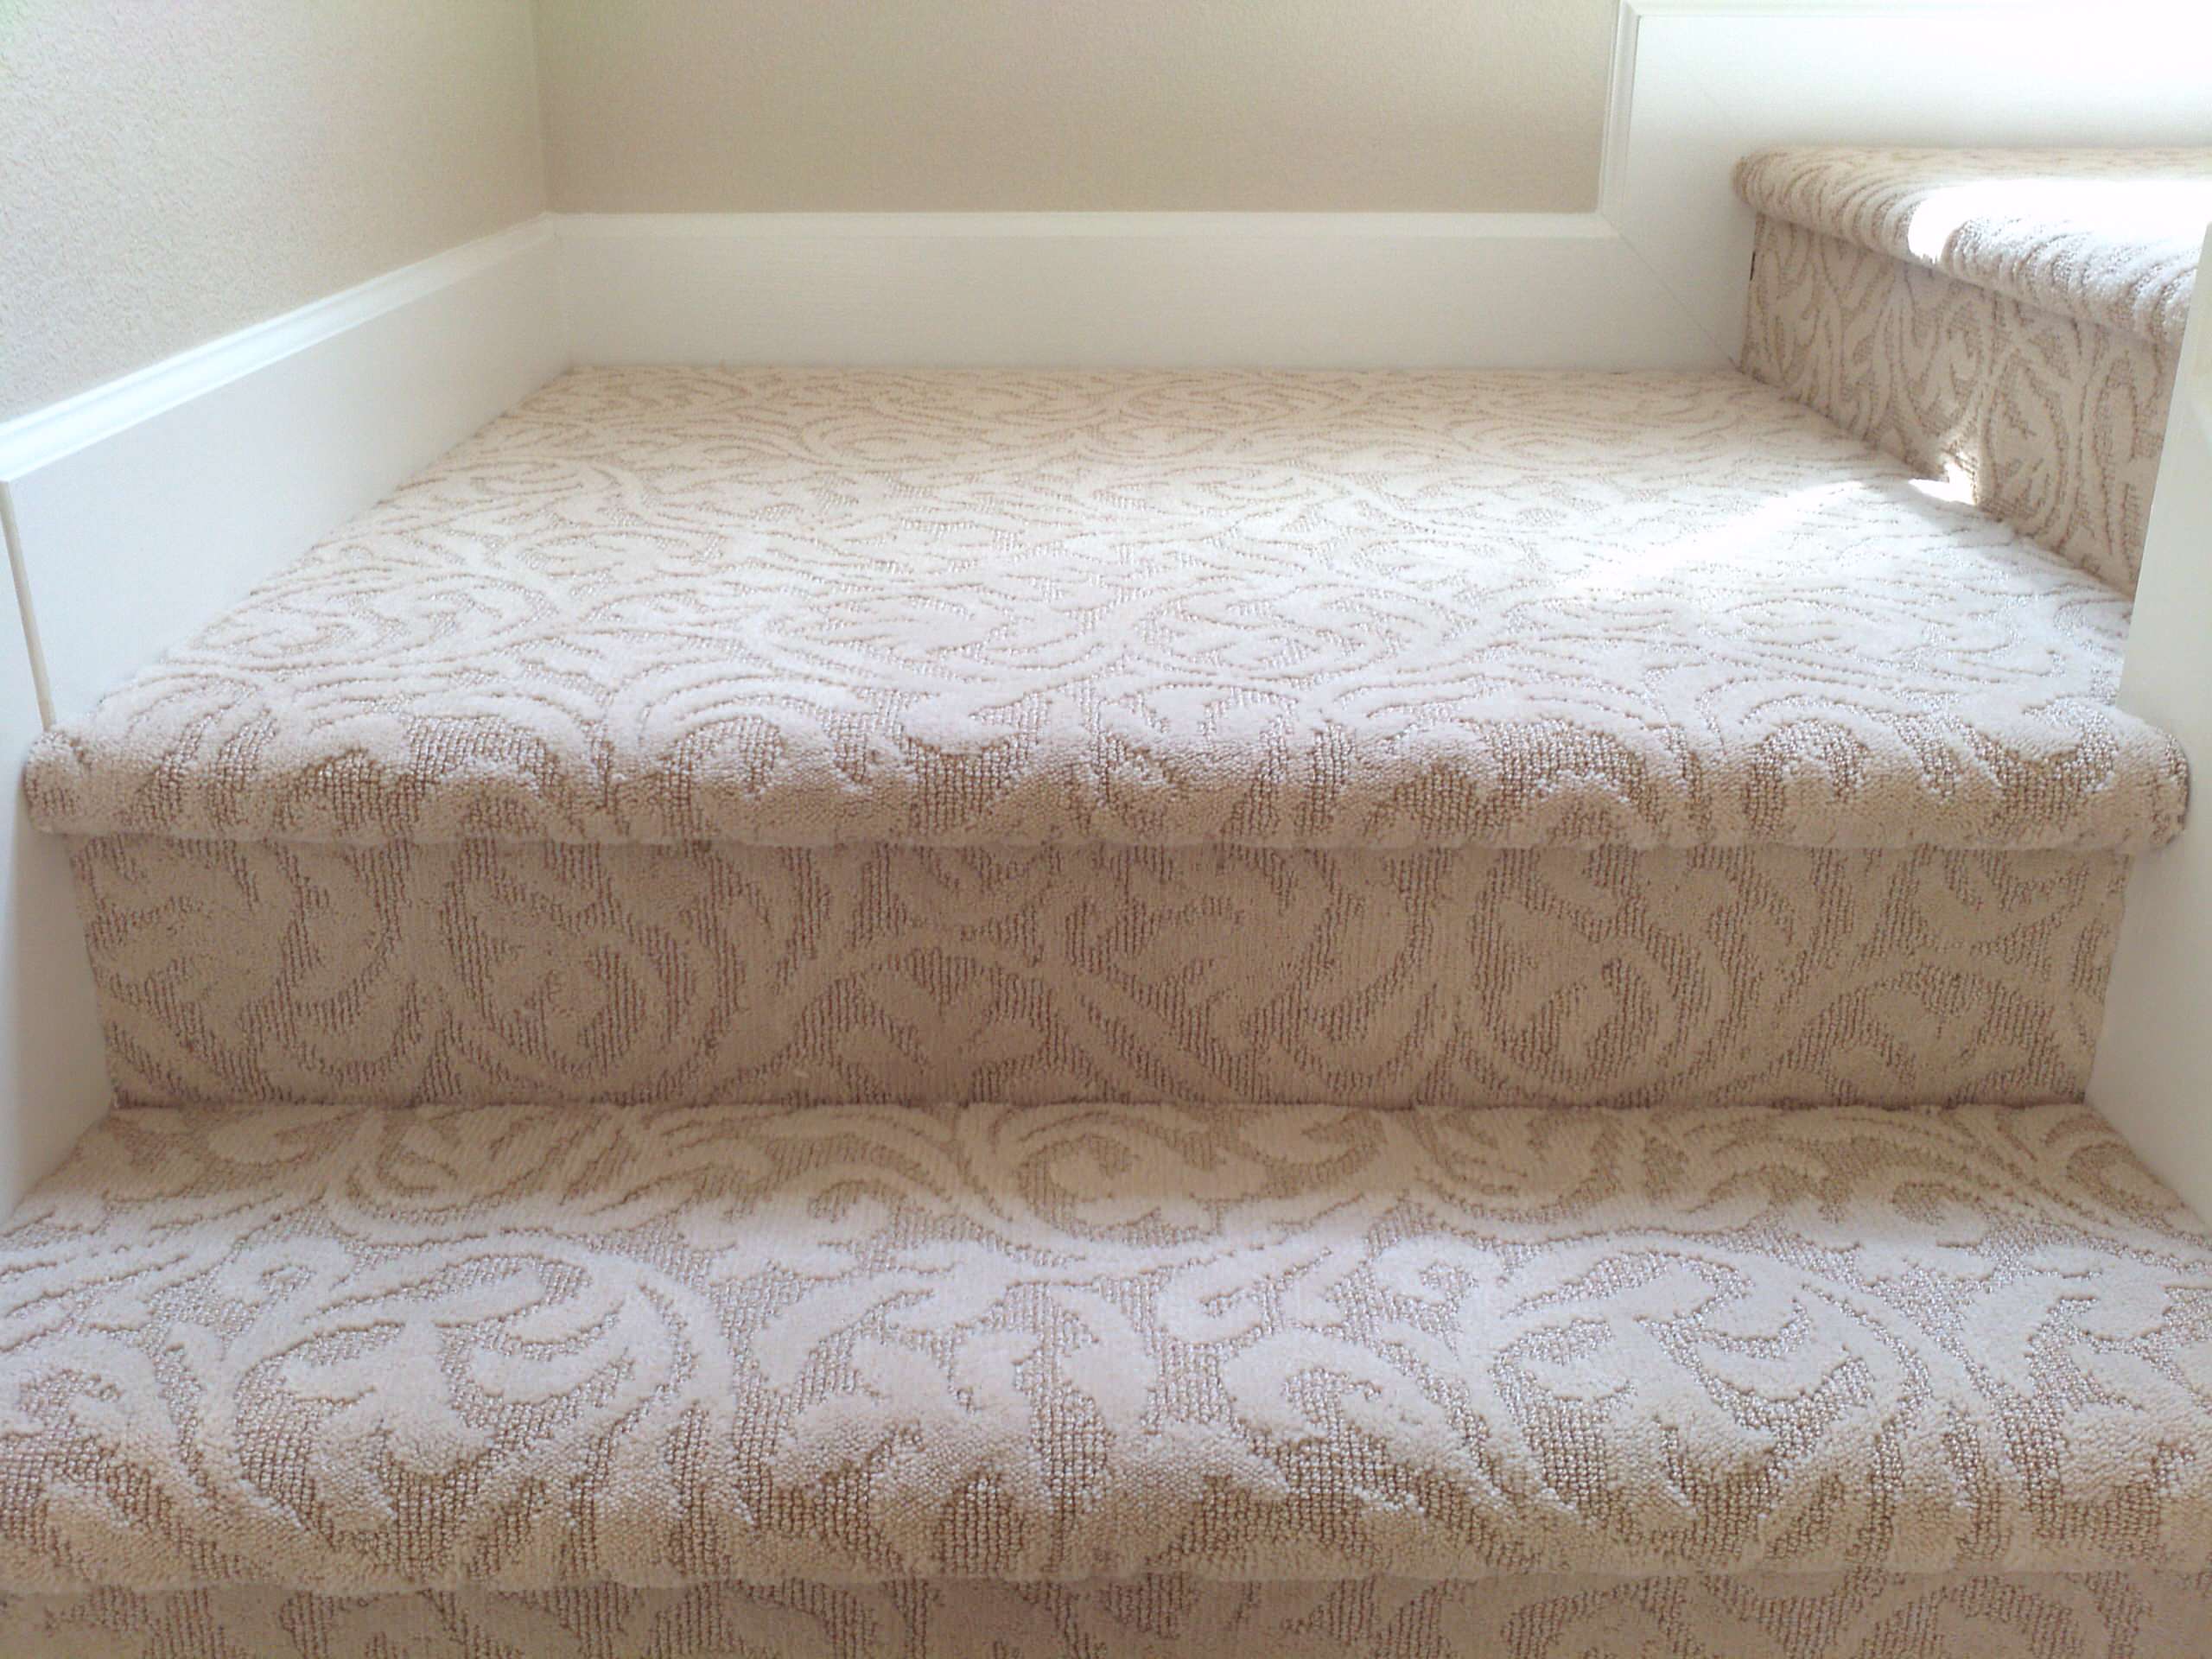 Carpet Flooring - Stairs & Bedroom